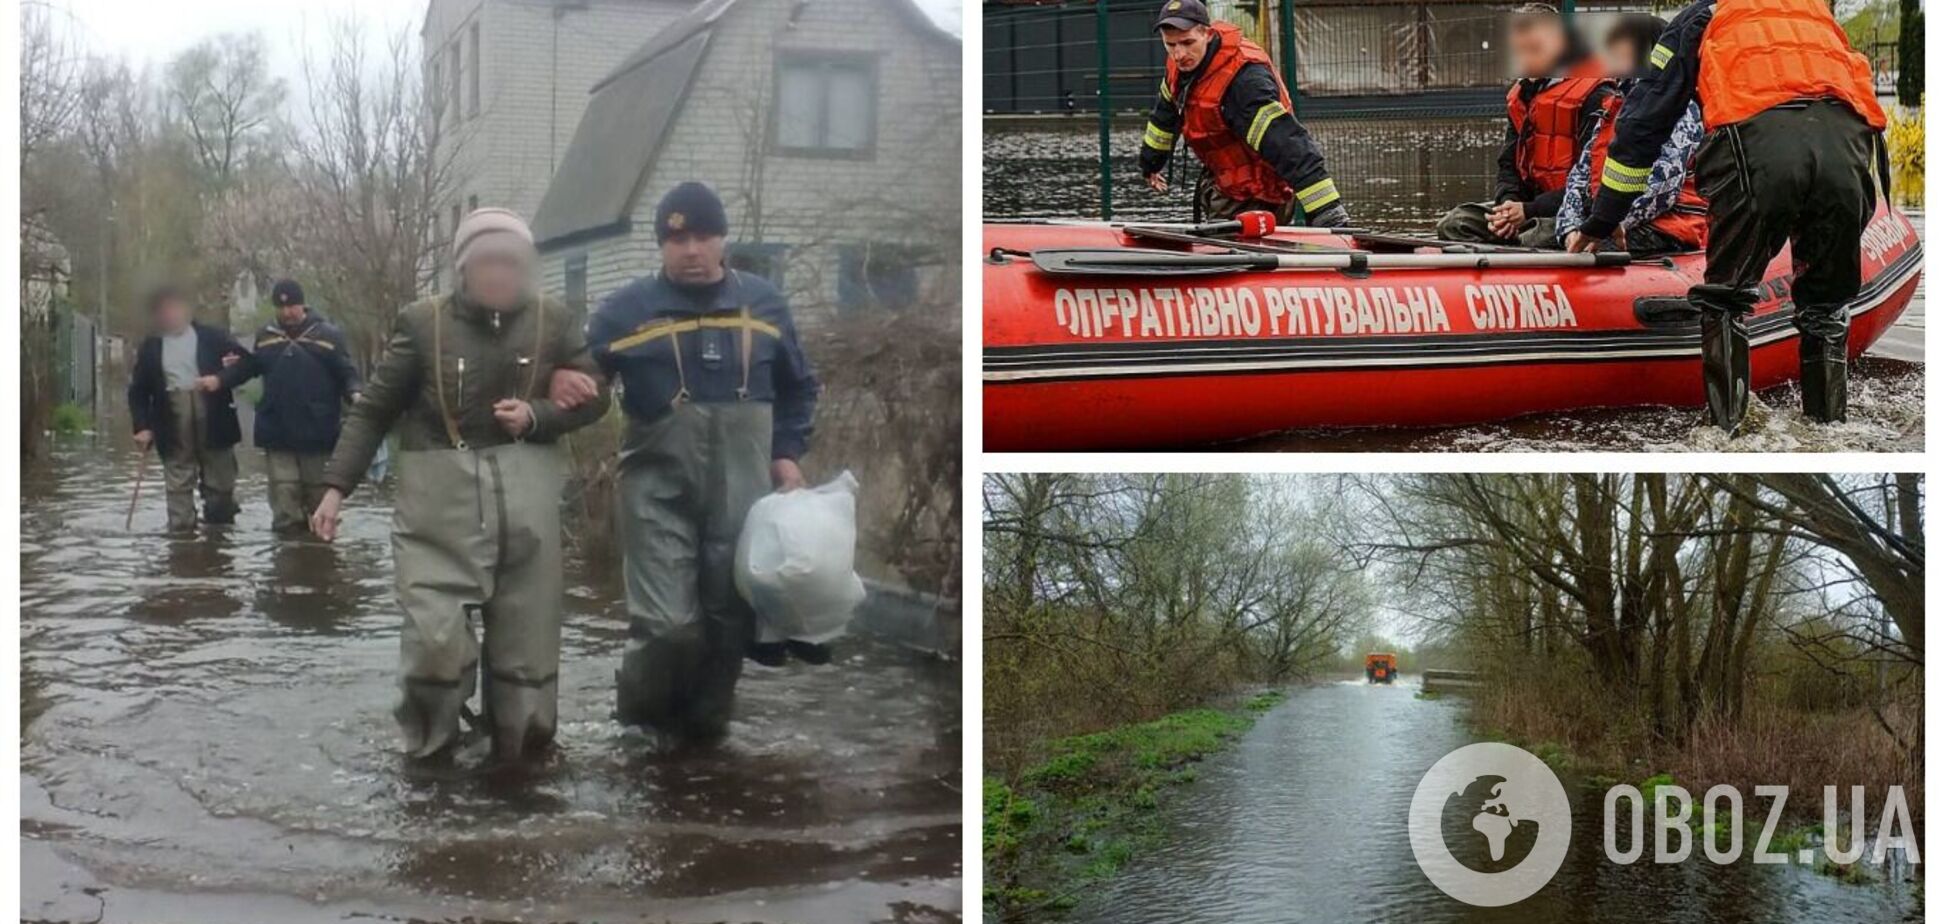 Велика вода в Україні: декілька областей постраждали від сильної повені. Фото